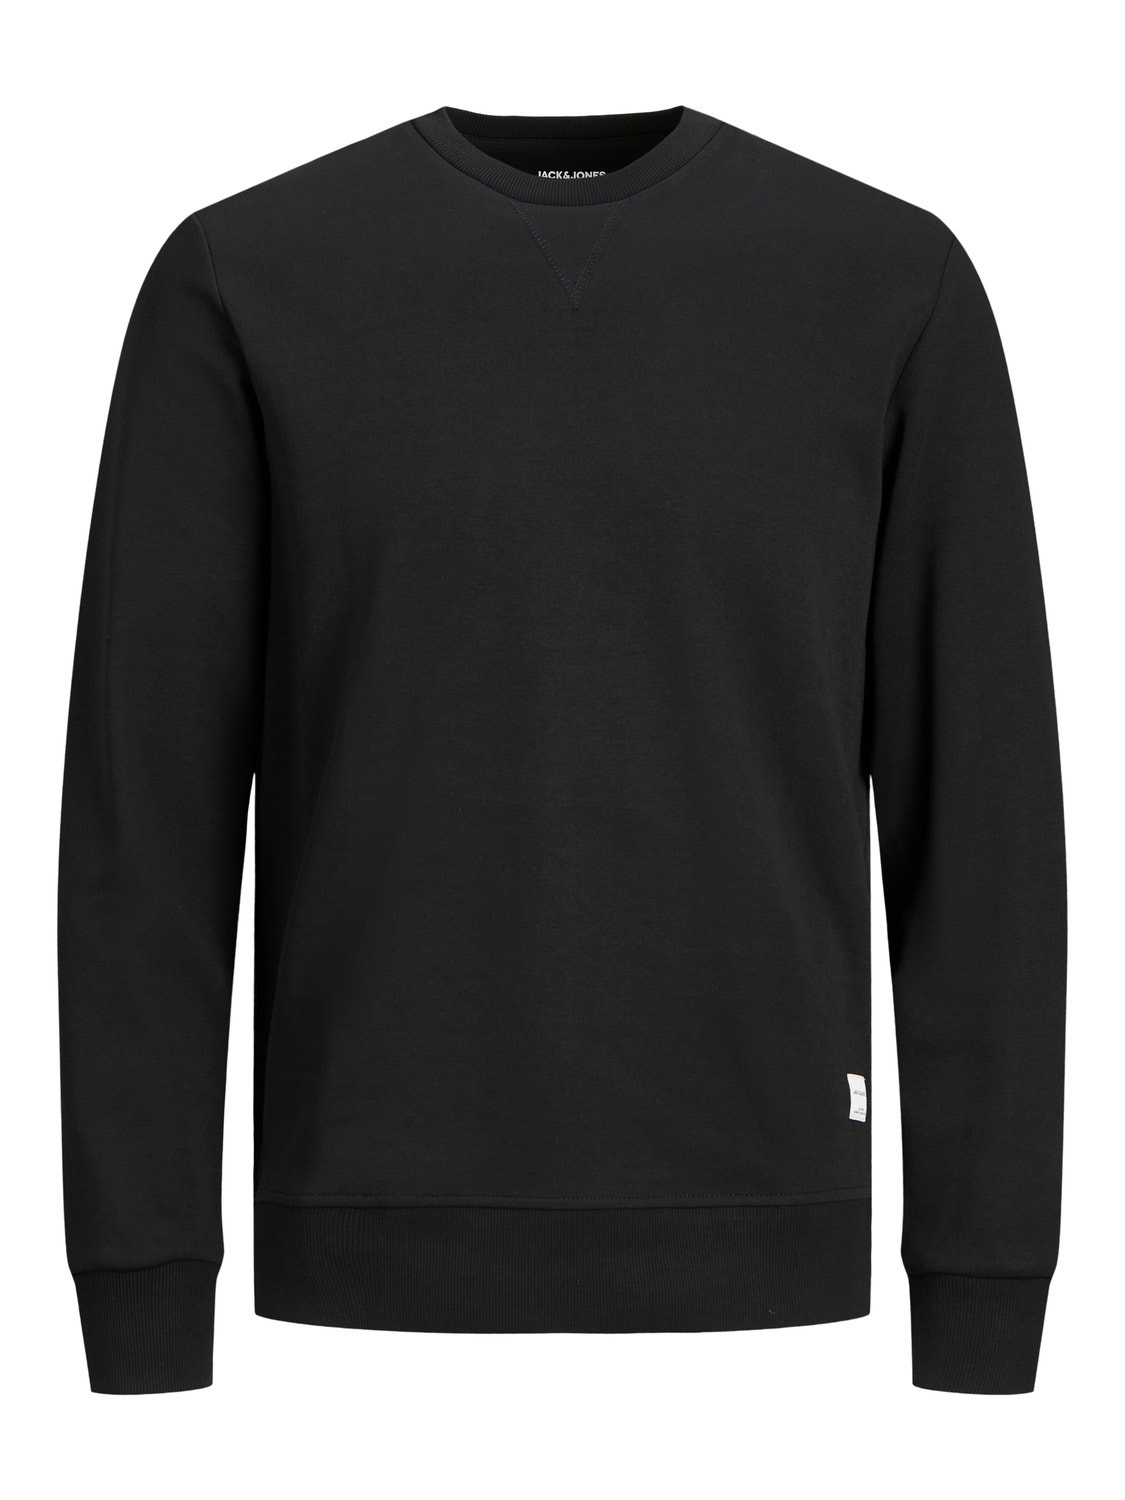 Jack & Jones Plus Plain Sweatshirt -Black - 12182567